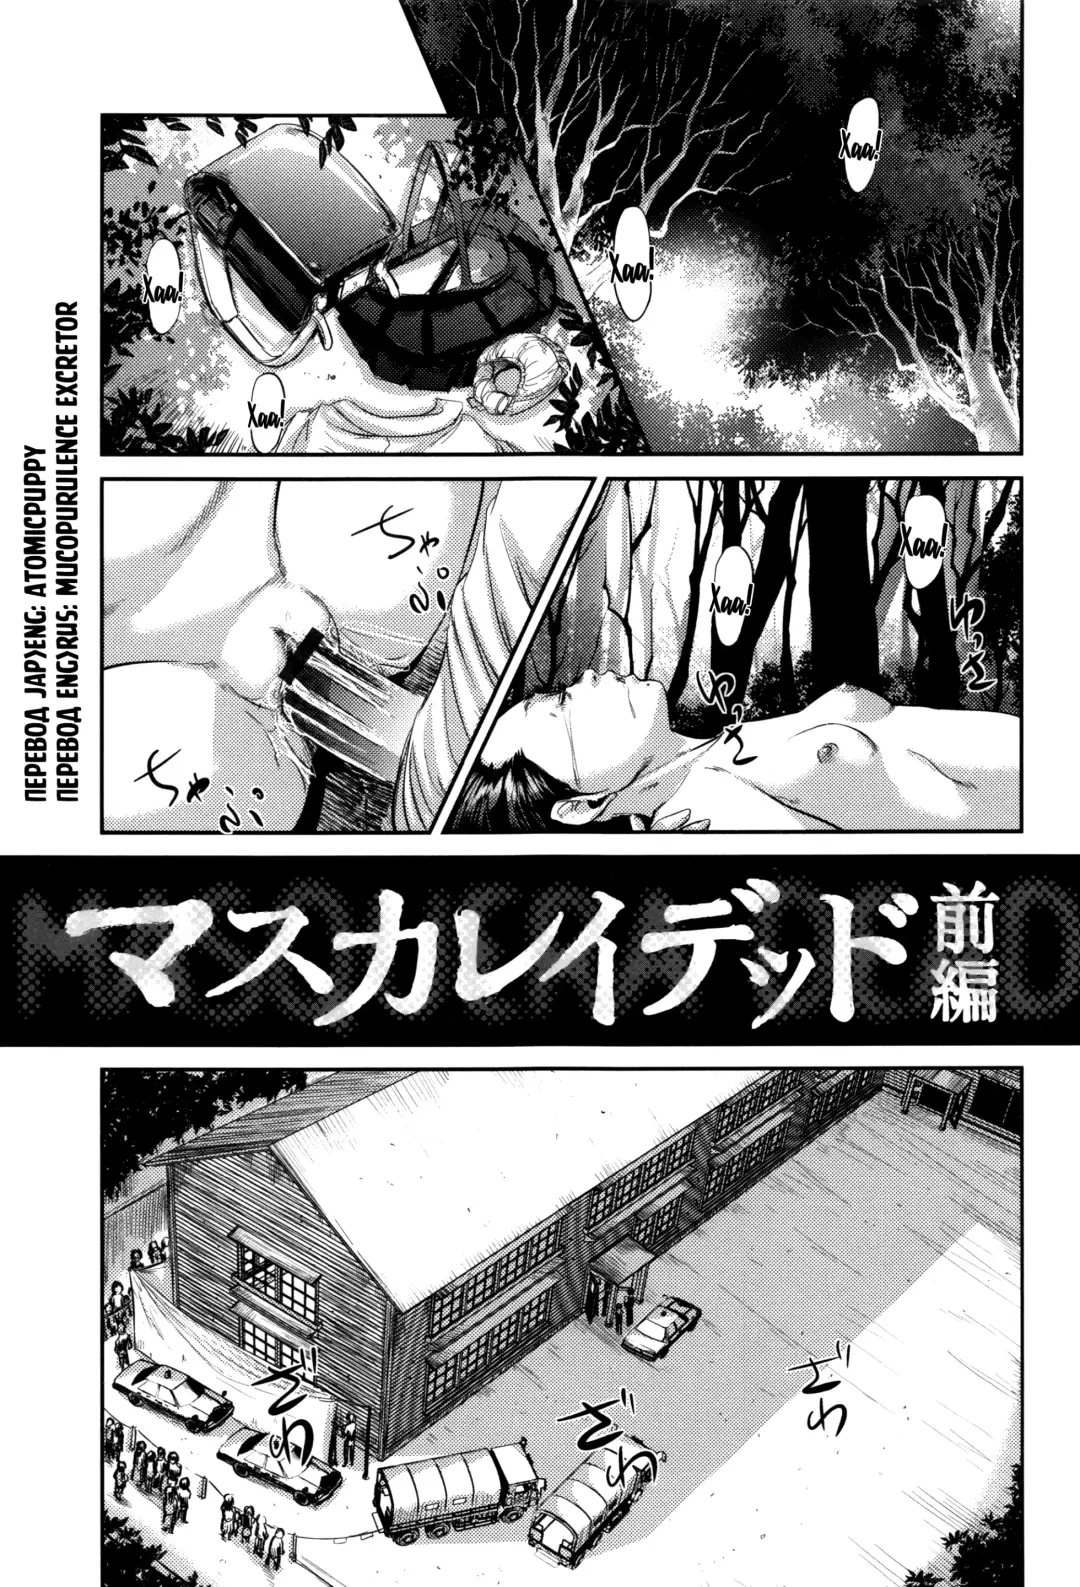 Read [Shinjima Saki] MasqueraDead - глава 1-2 - Fhentai.net